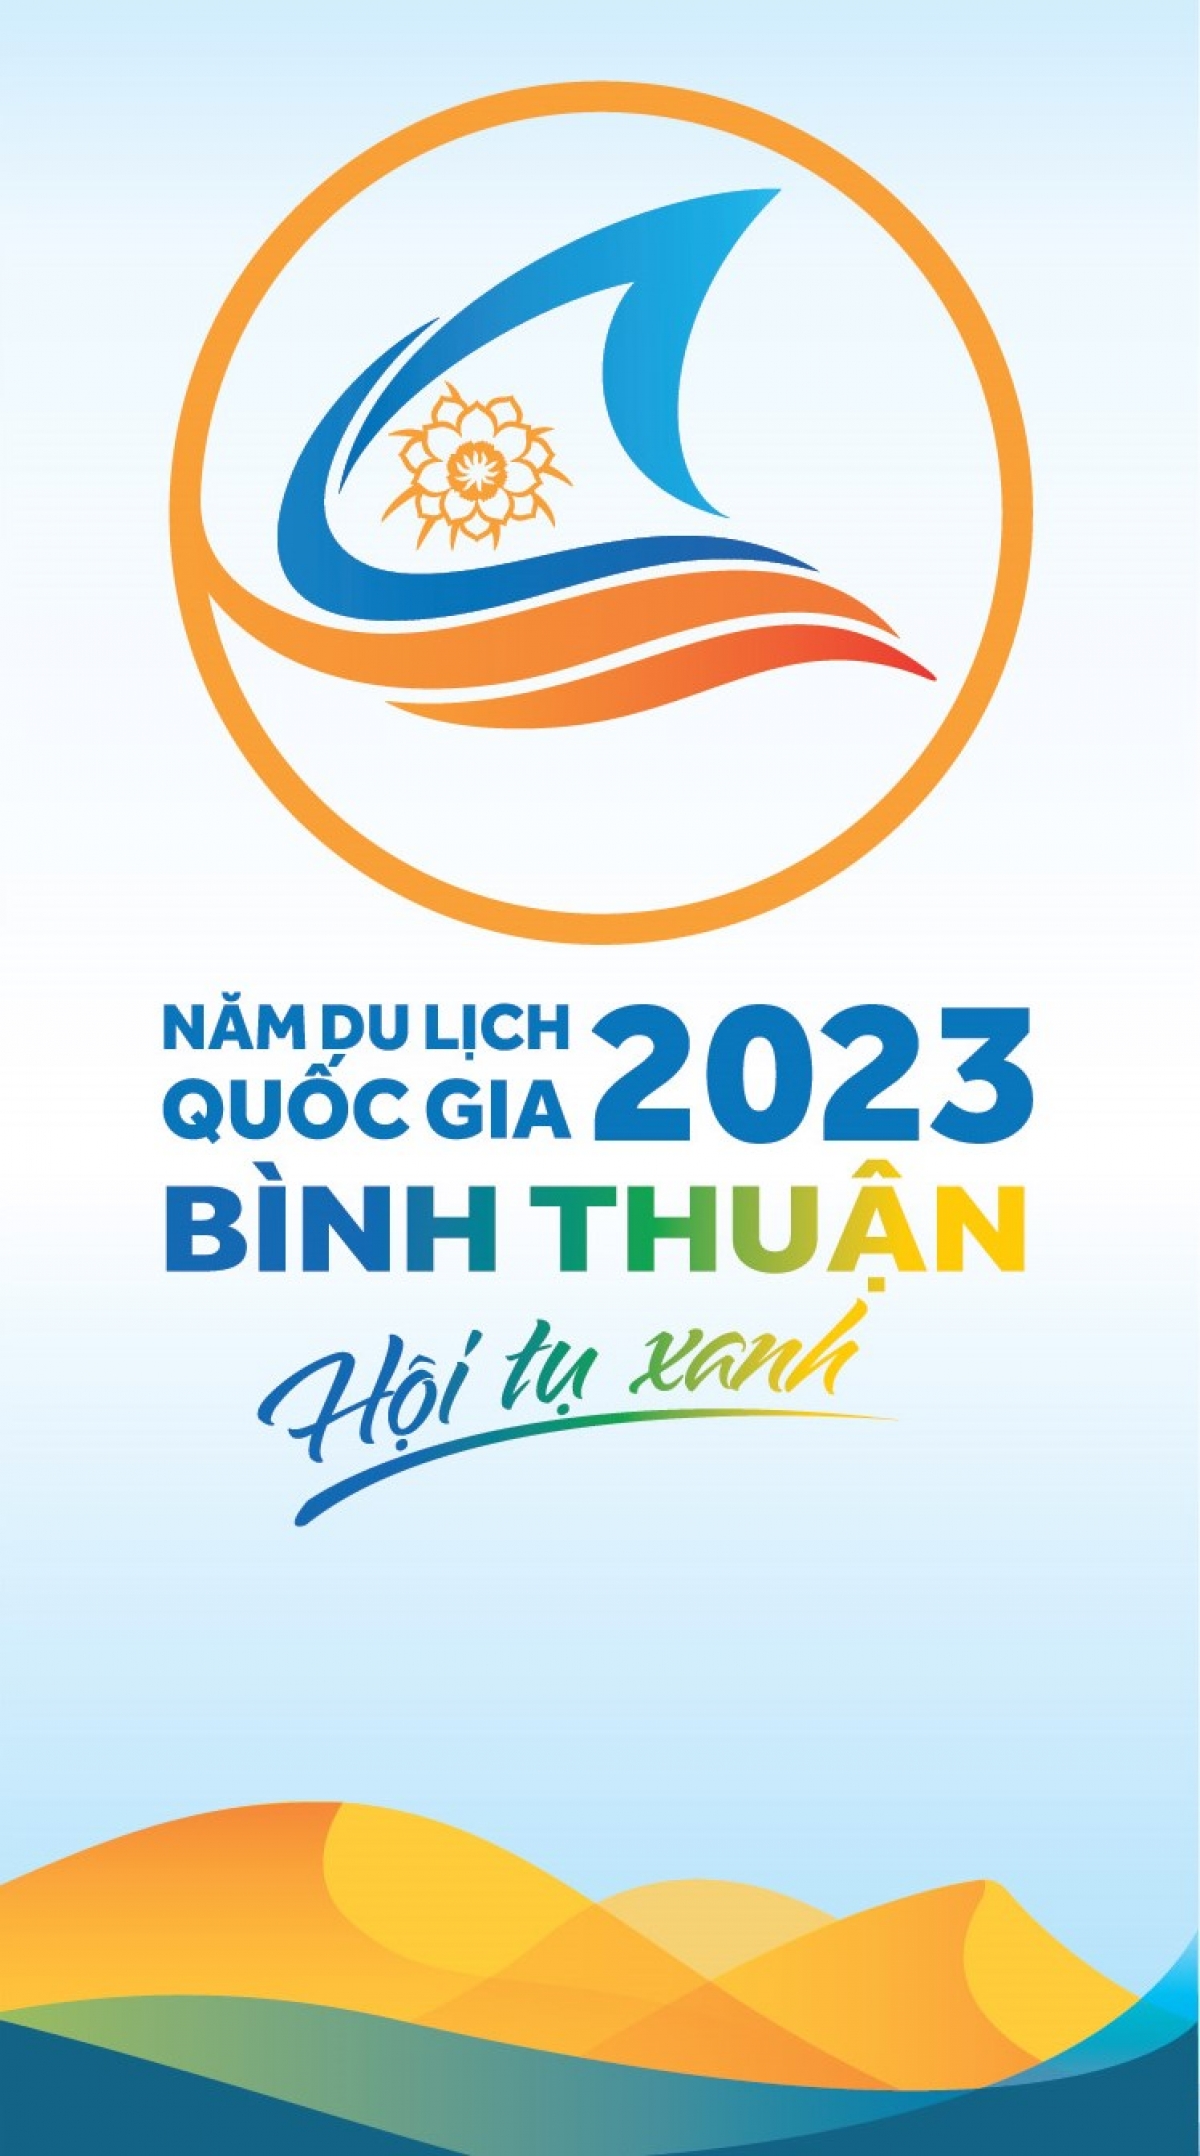 Bộ nhận diện thương hiệu Năm Du lịch quốc gia 2023 bằng tiếng Việt